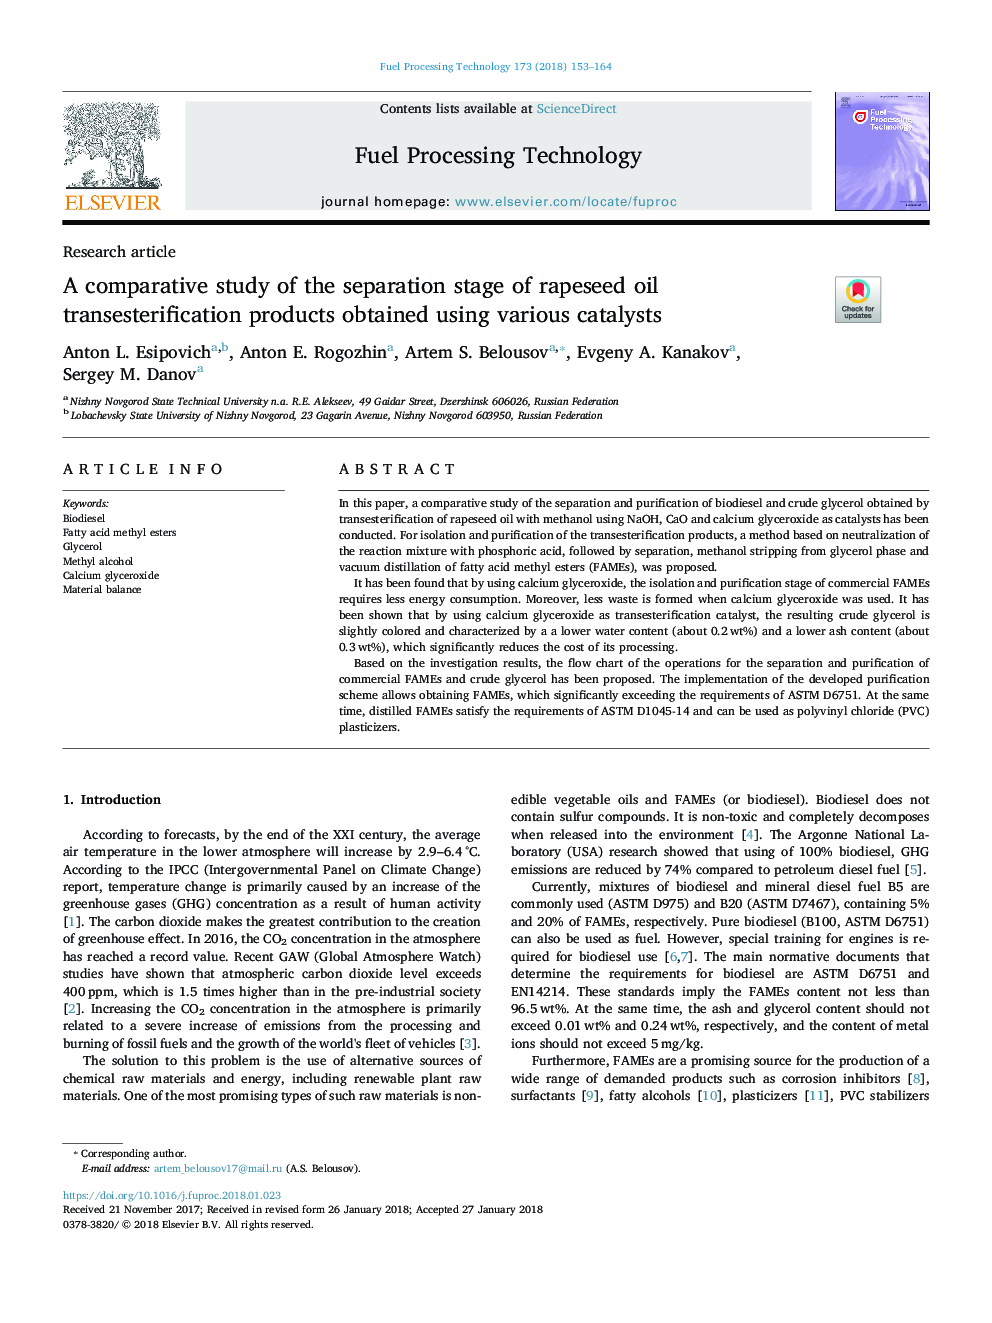 یک مطالعه مقایسه ای از مرحله جداسازی محصولات ترانس استریل شدن روغن کلزا با استفاده از کاتالیزور های مختلف 